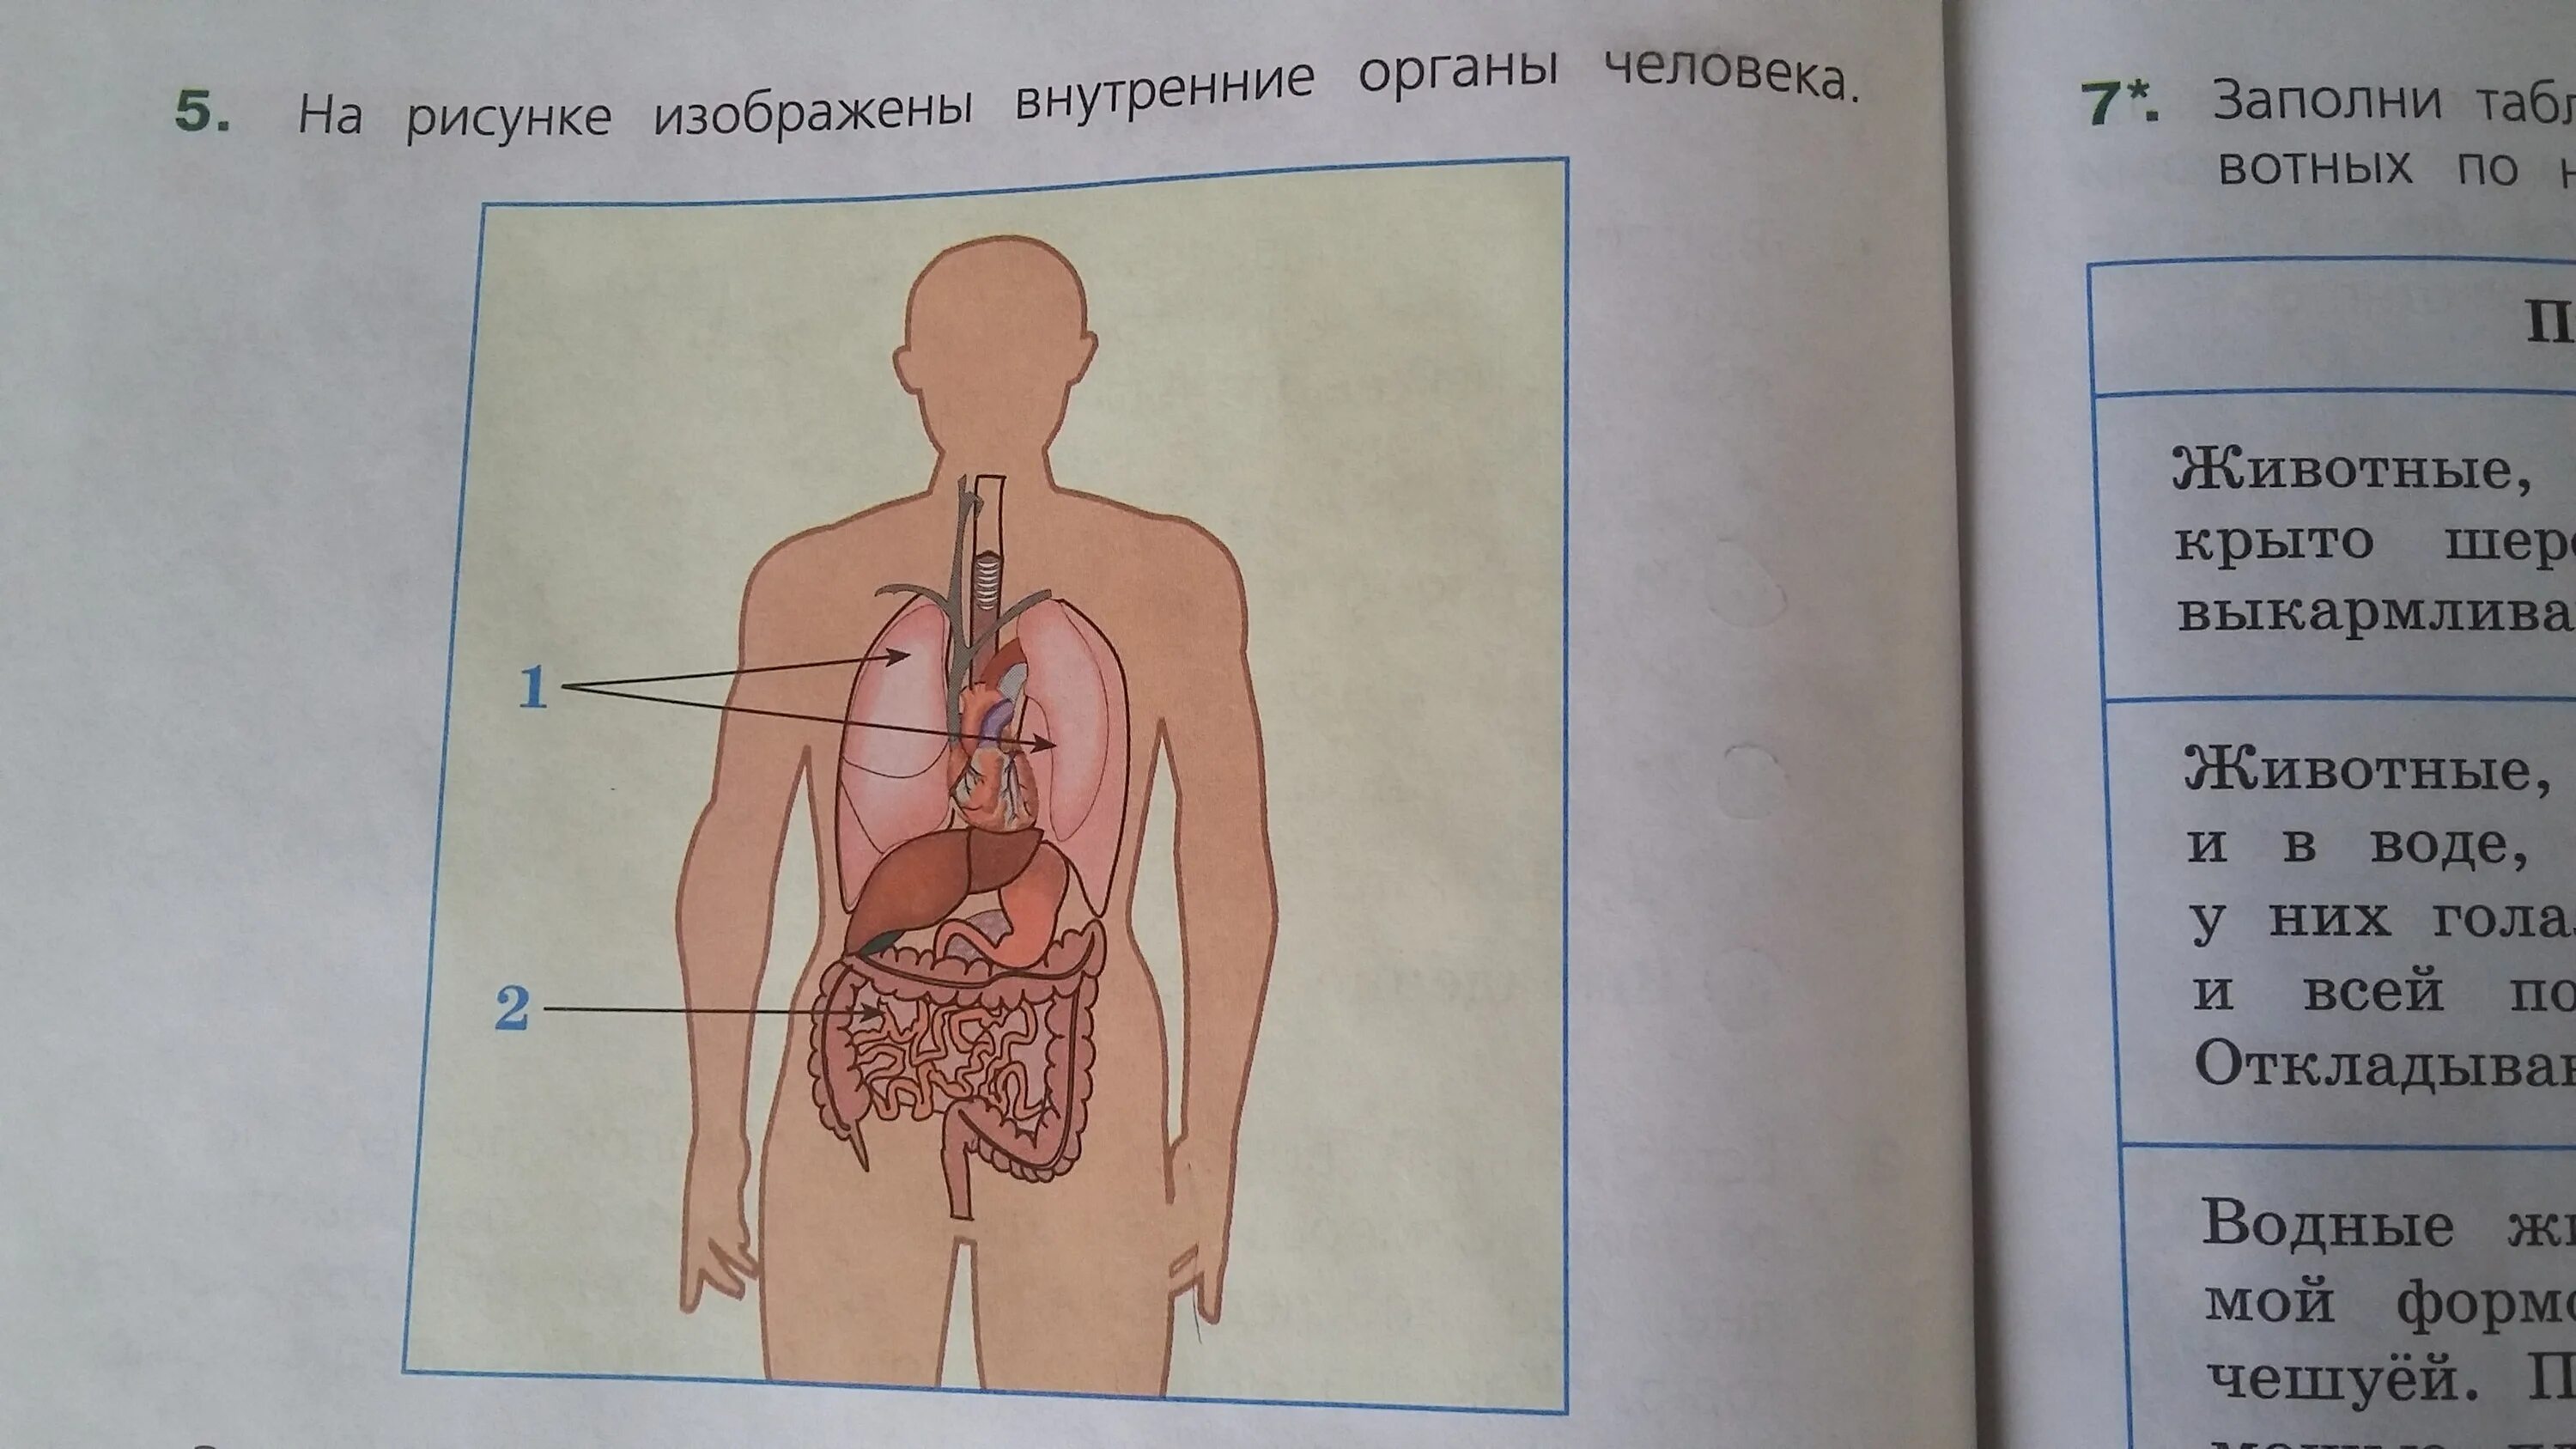 Рассмотри рисунок на котором изображен. Органы человека. Подпиши названия органов. Внутренние органы.